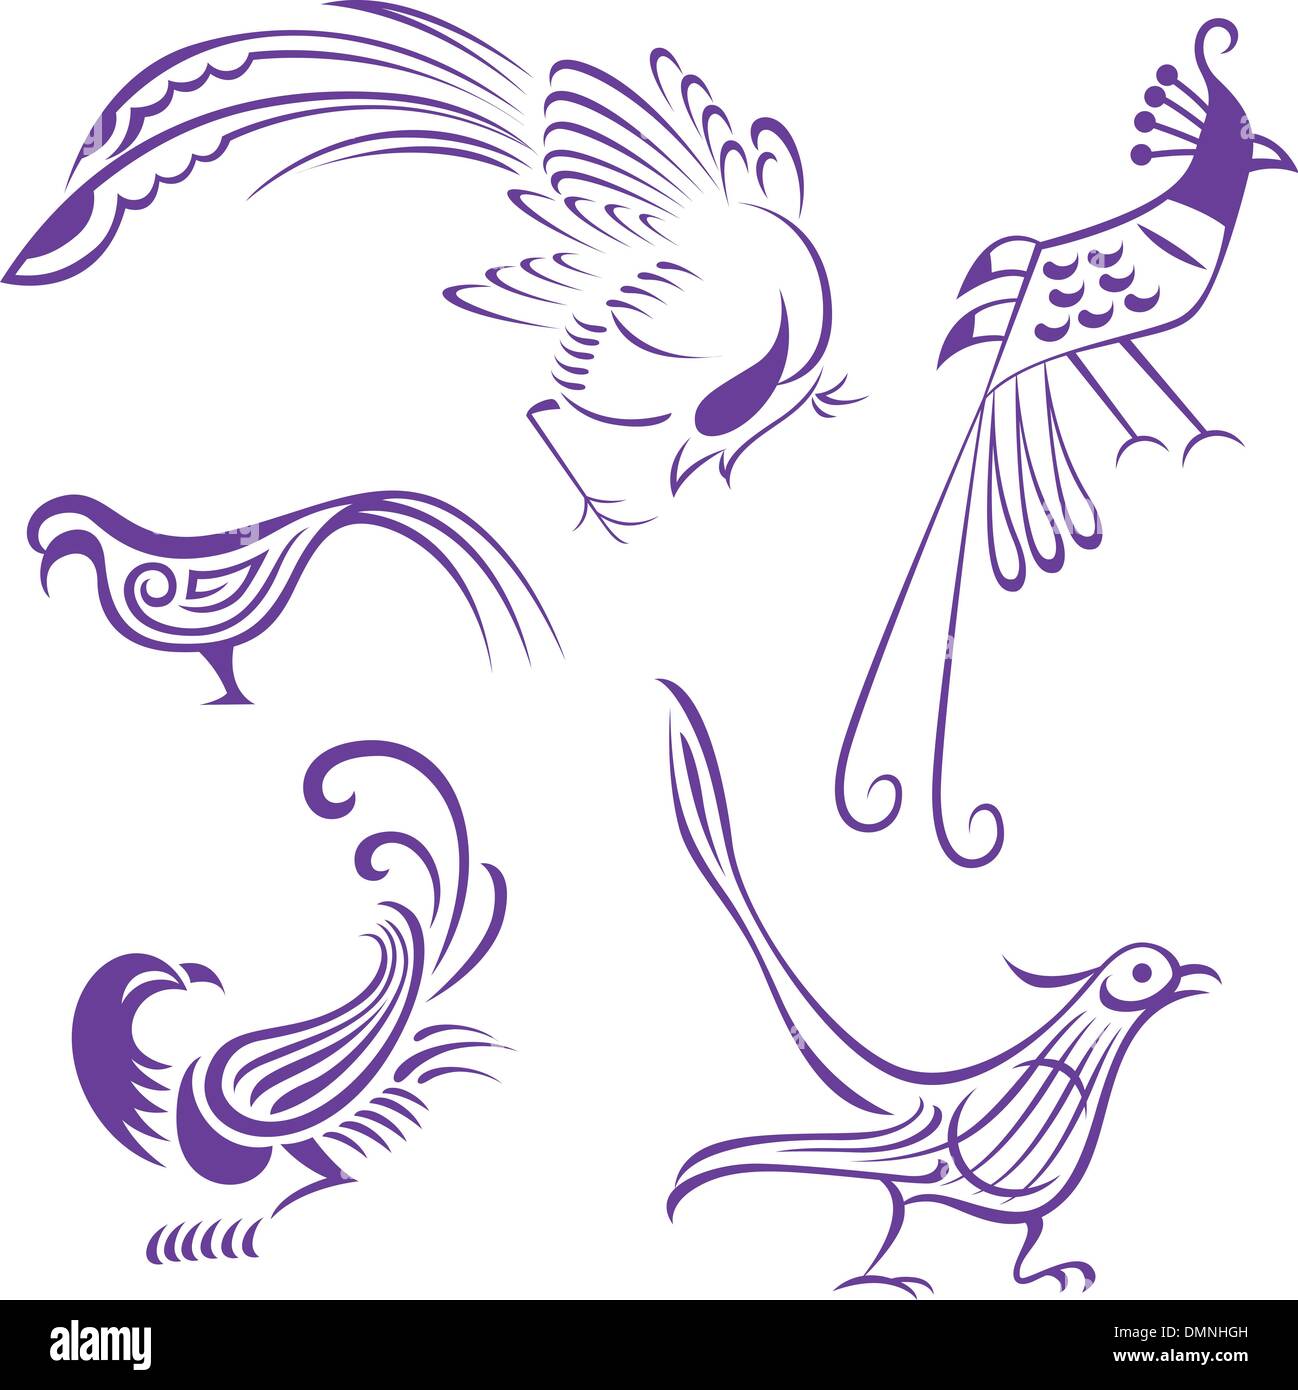 Abstract phoenix bird tattoo symbol Illustrazione Vettoriale